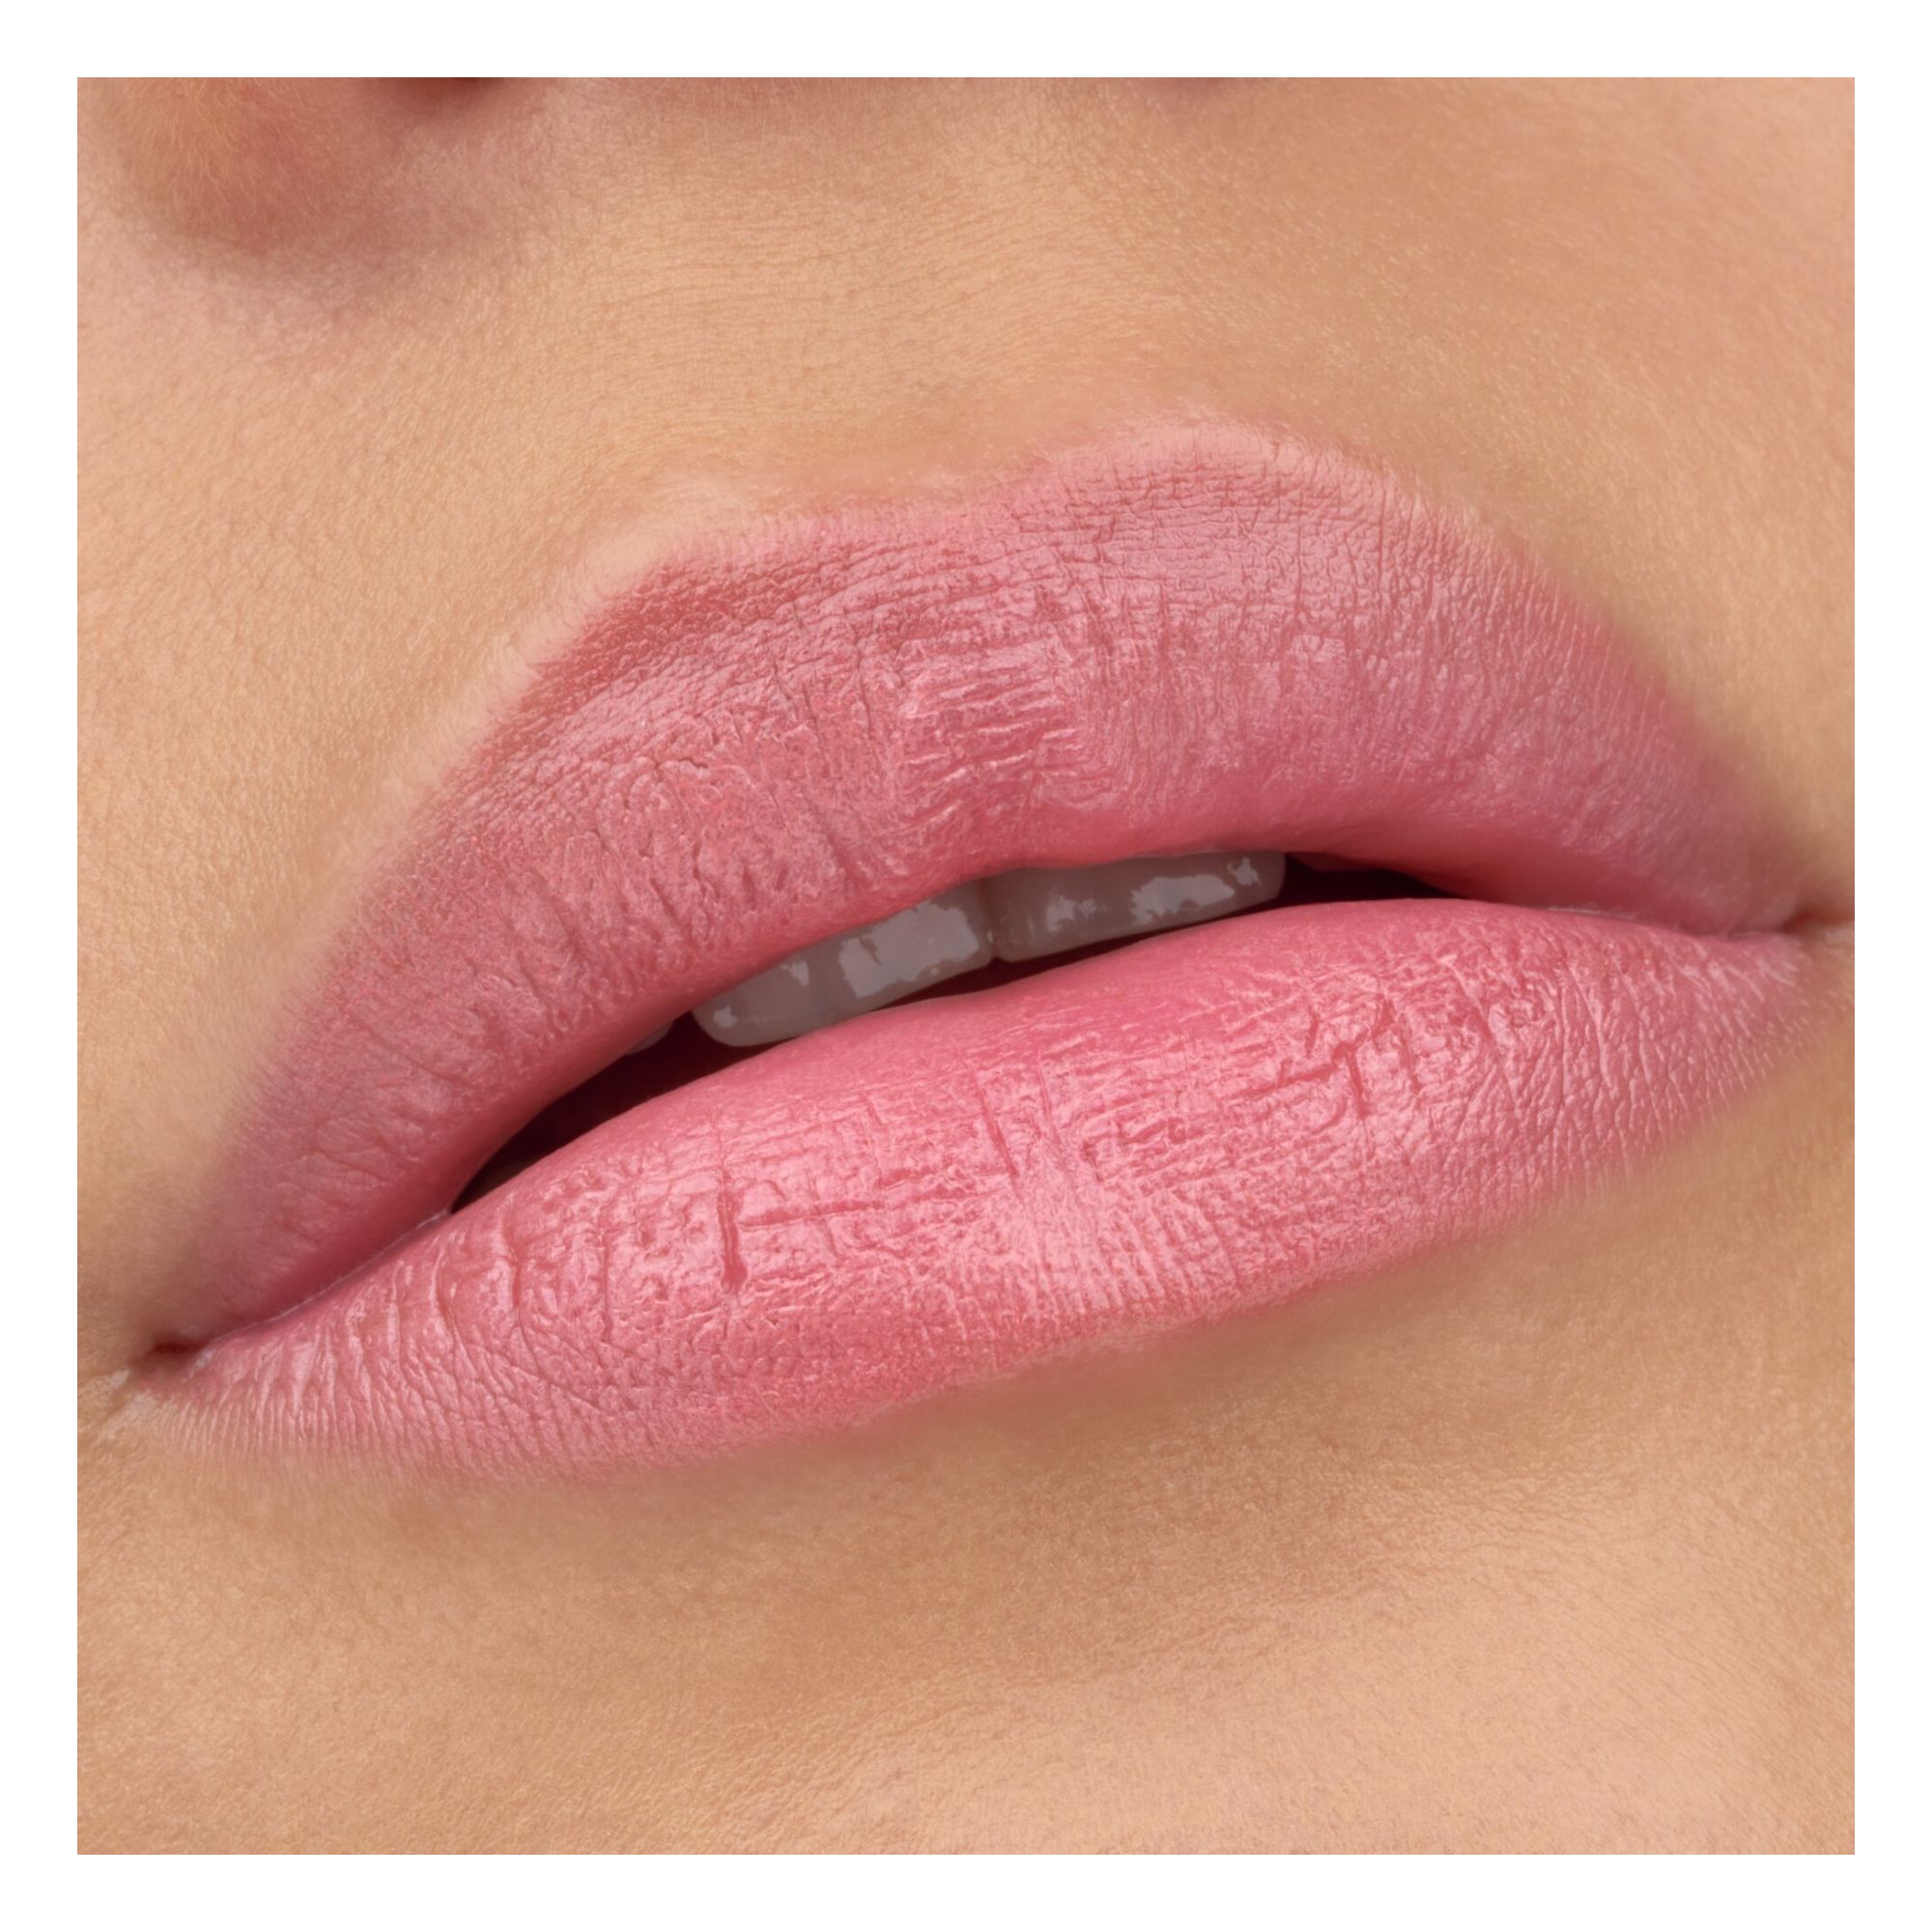 Flüssig-Lippenstift - Tinted Kiss Hydrating Lip Tint